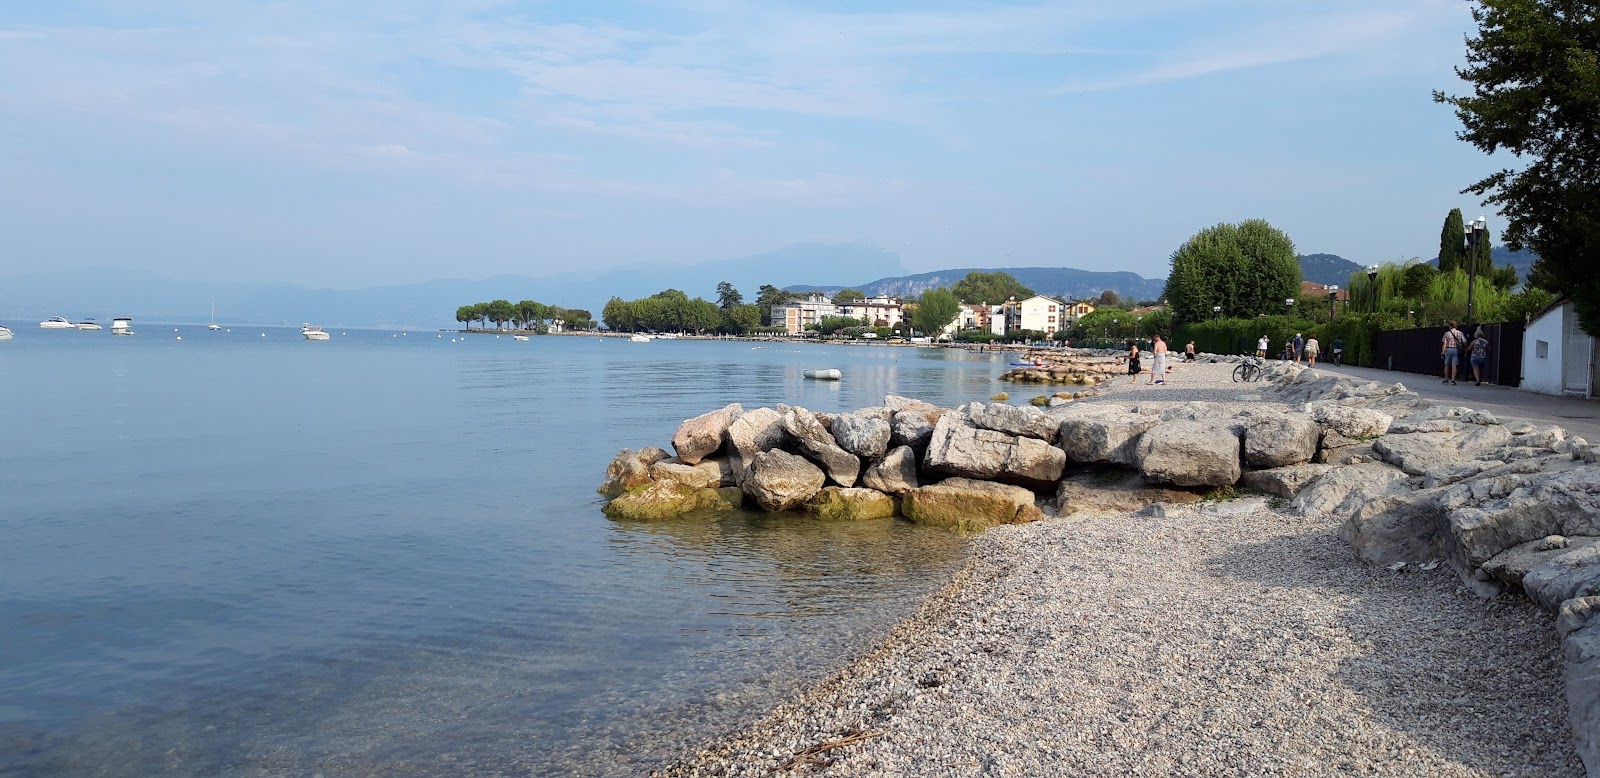 Foto de Spiaggia Lido di Cisano - lugar popular entre los conocedores del relax